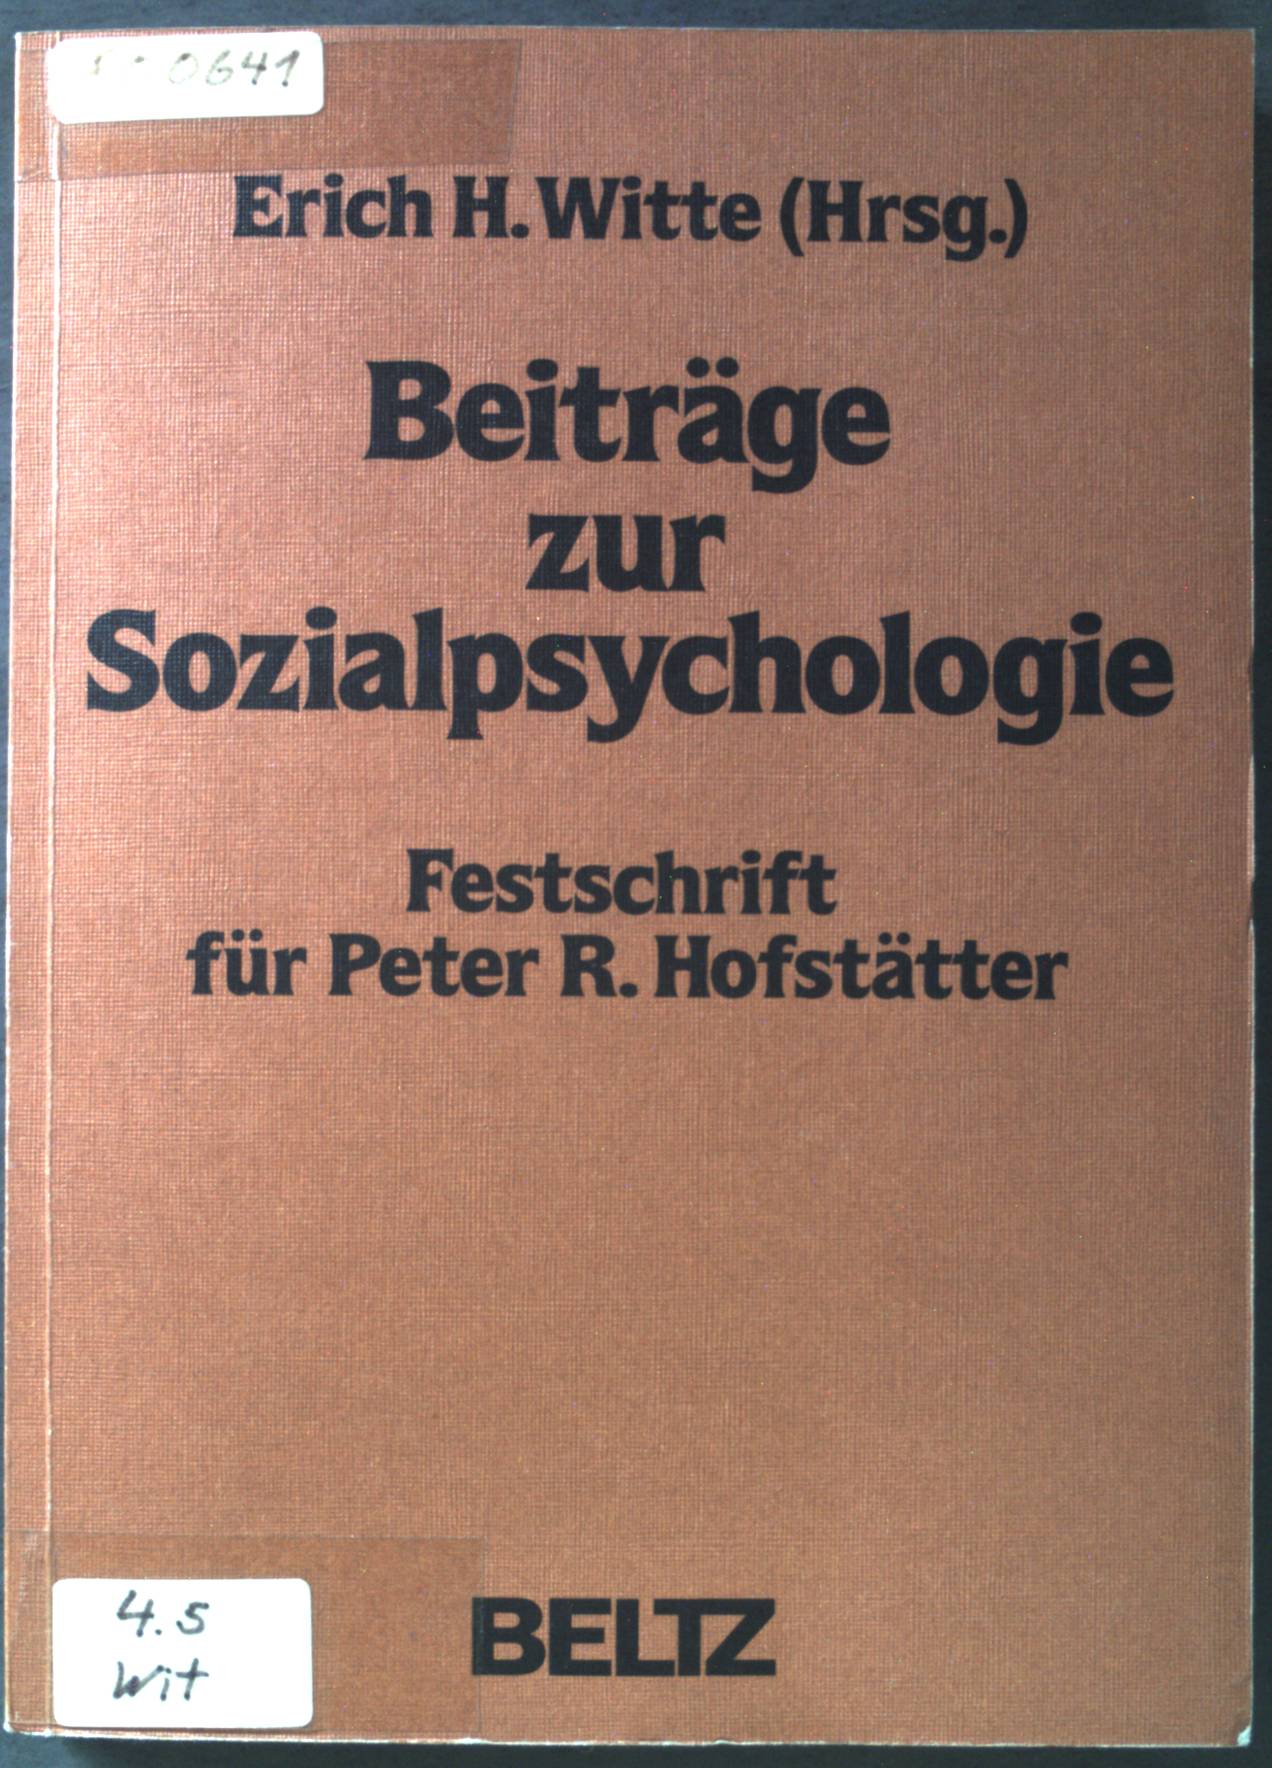 Beiträge zur Sozialpsychologie: Festschrift für Peter R. Hofstätter. - Witte, Erich H. (Herausgeber)